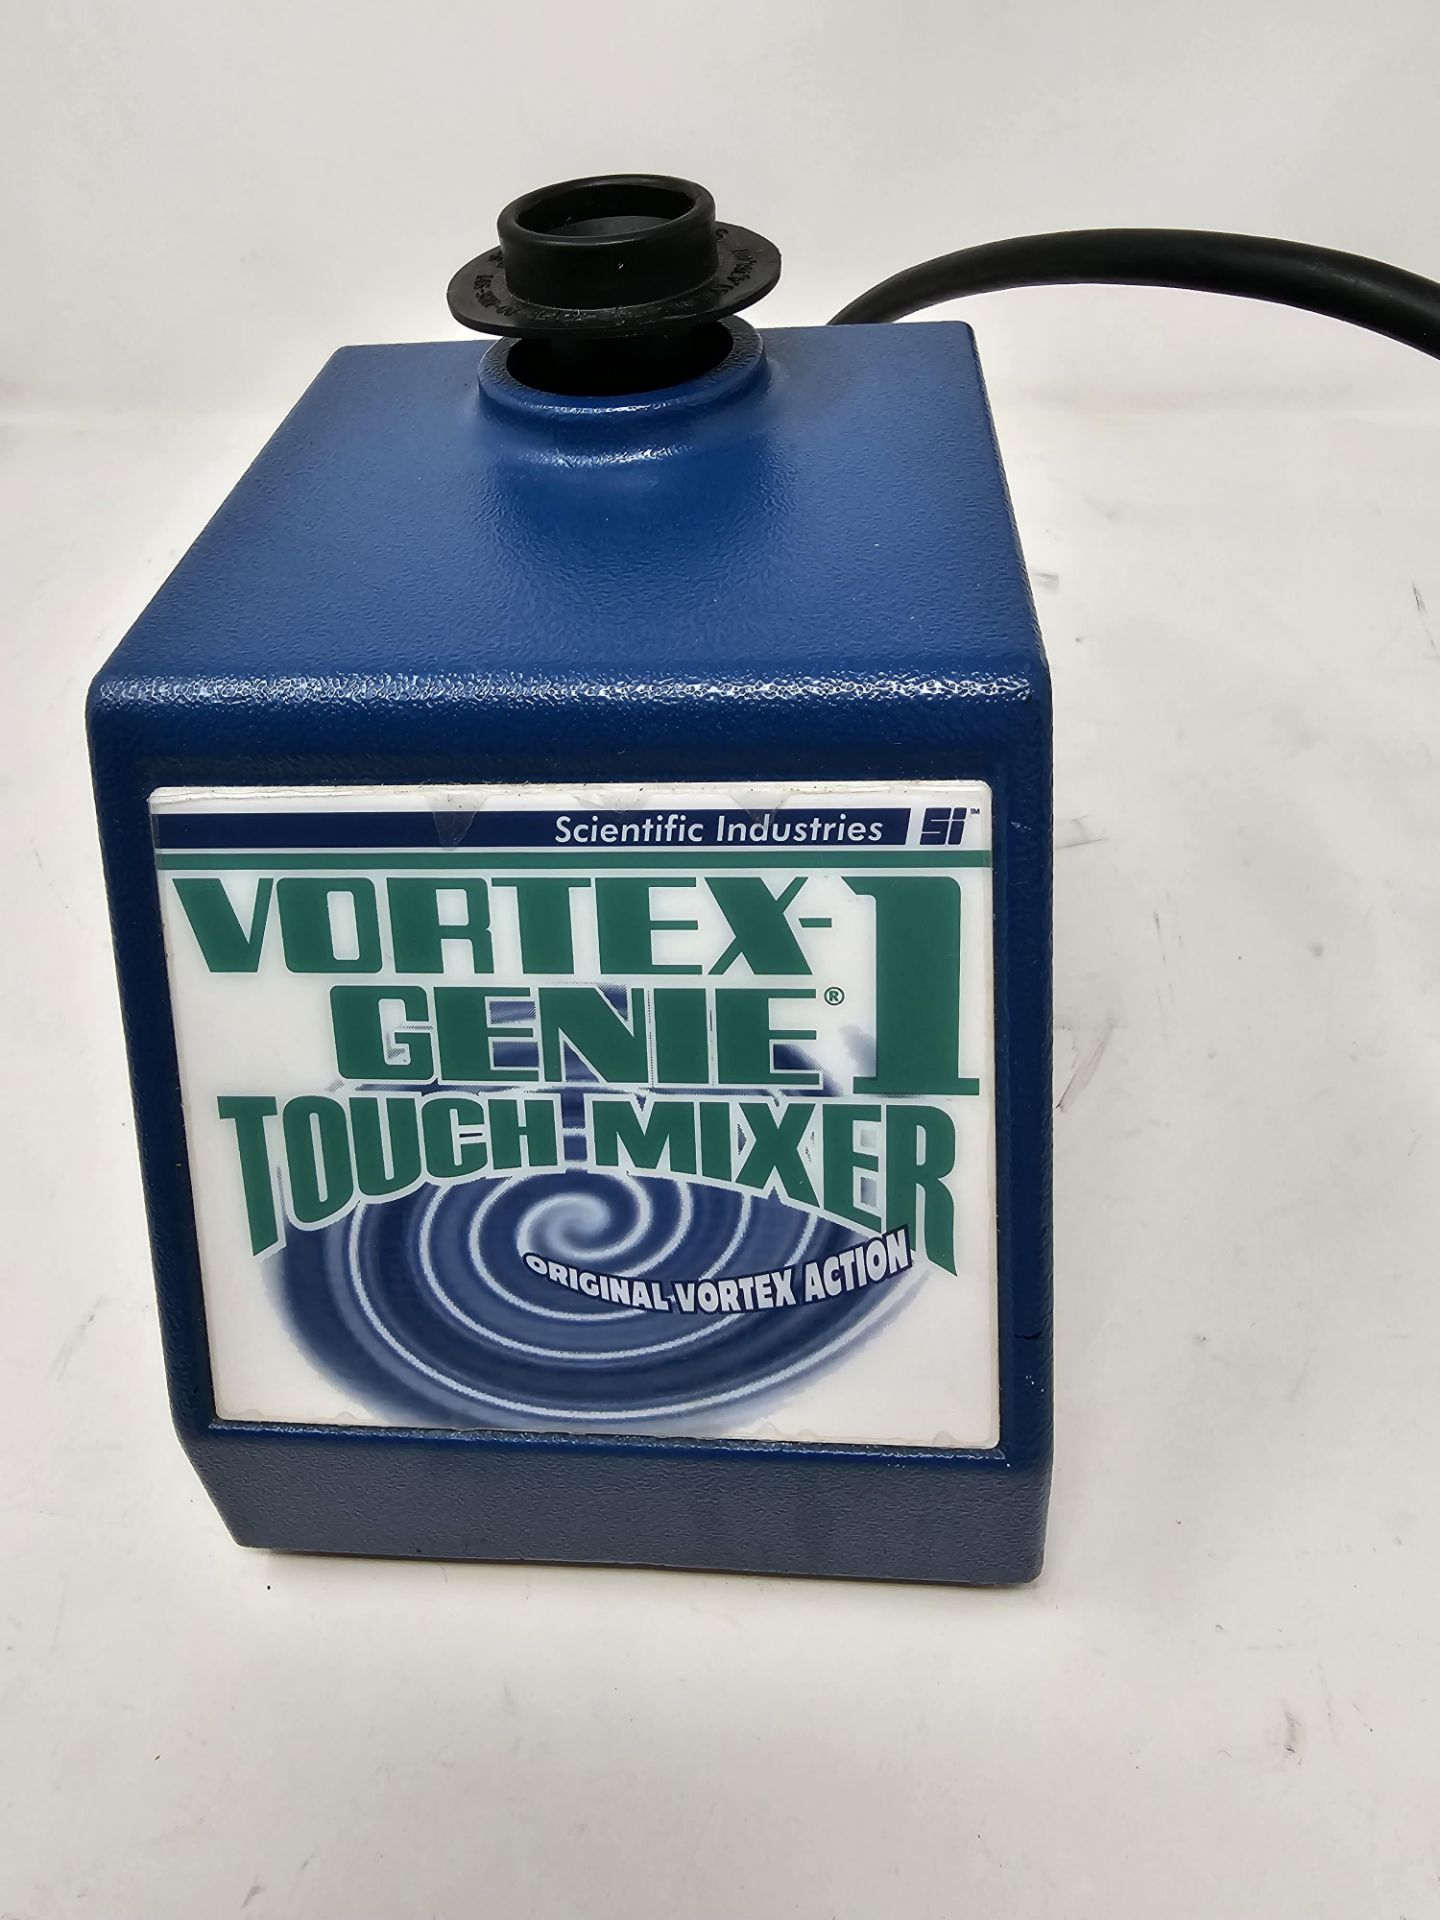 Scientific Industries Vortex-1 Genie Touch Mixer Model SI-0136, sn 13-3337 Bldg Loc: 1 This Lot